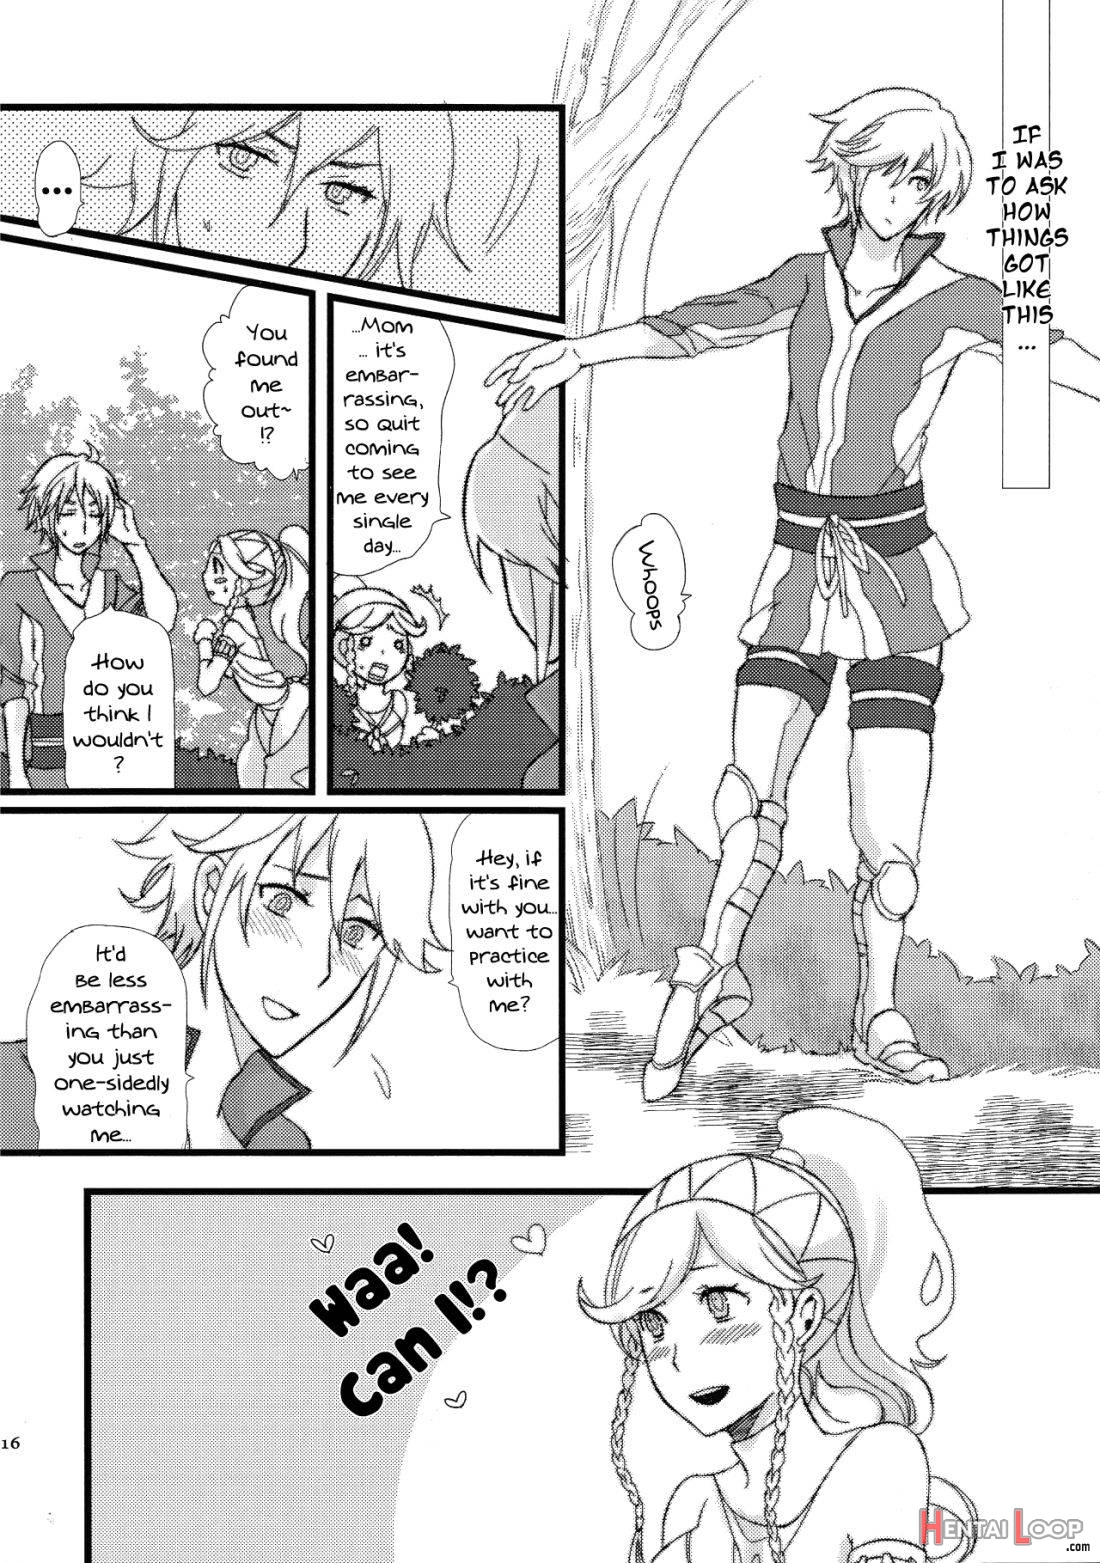 Maza☆Con page 14